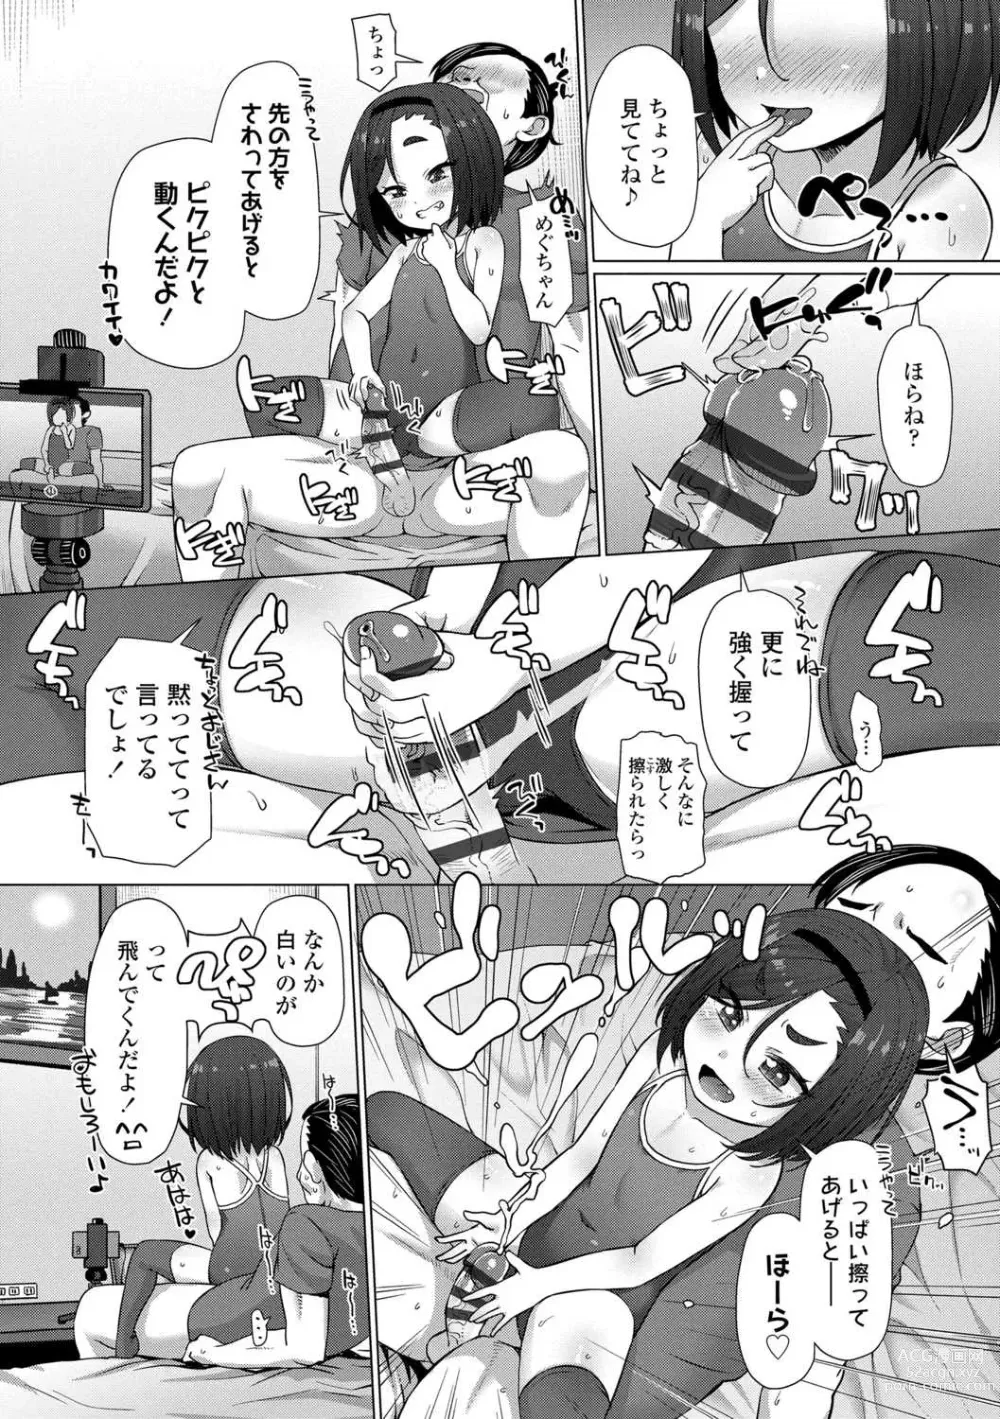 Page 18 of manga Nukunuku Mini Holes